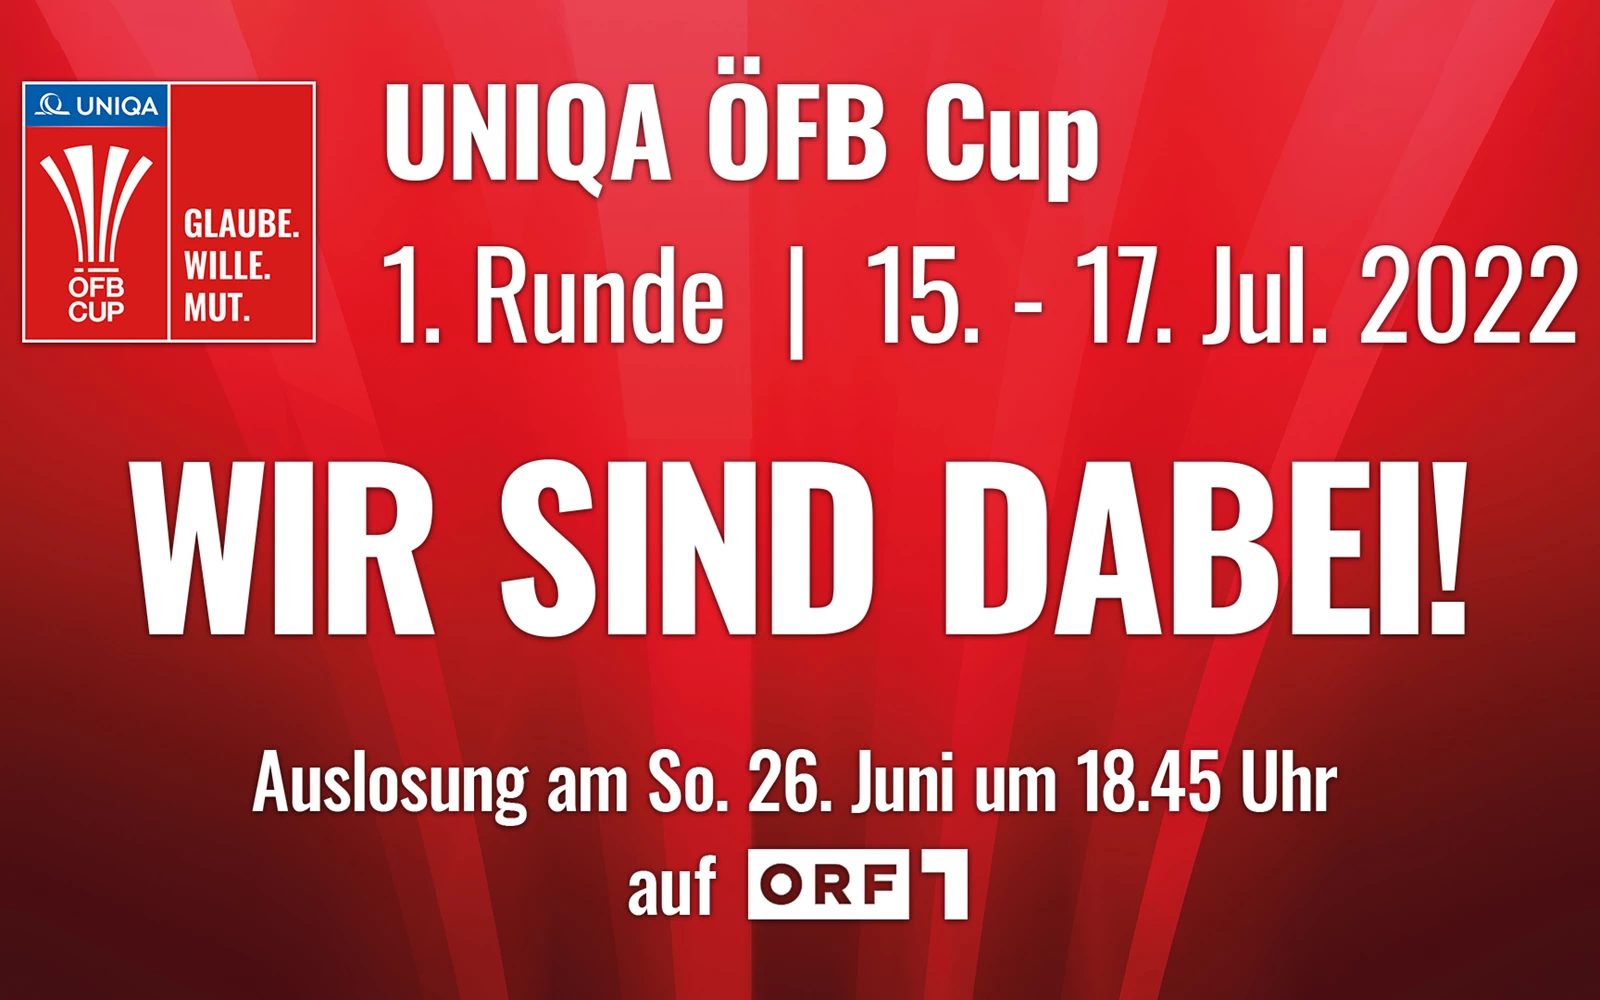 UNIQA ÖFB Cup Auslosung - wir sind dabei